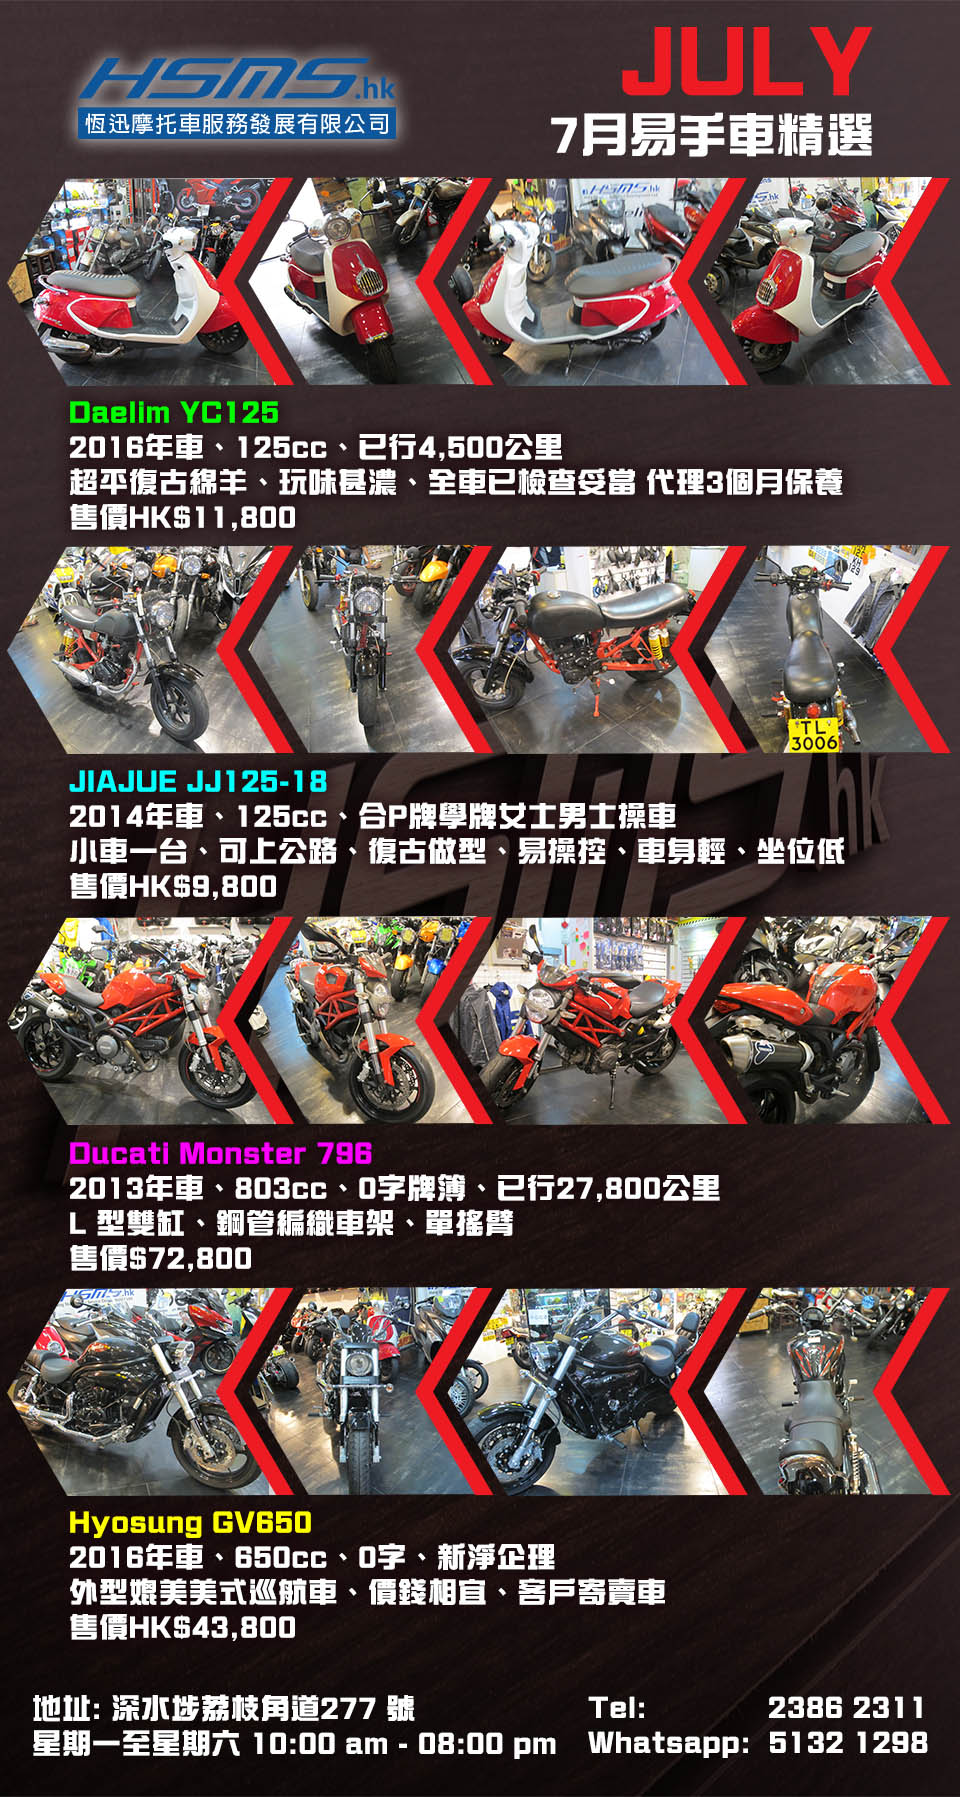 2018 HSMS HK used bike July